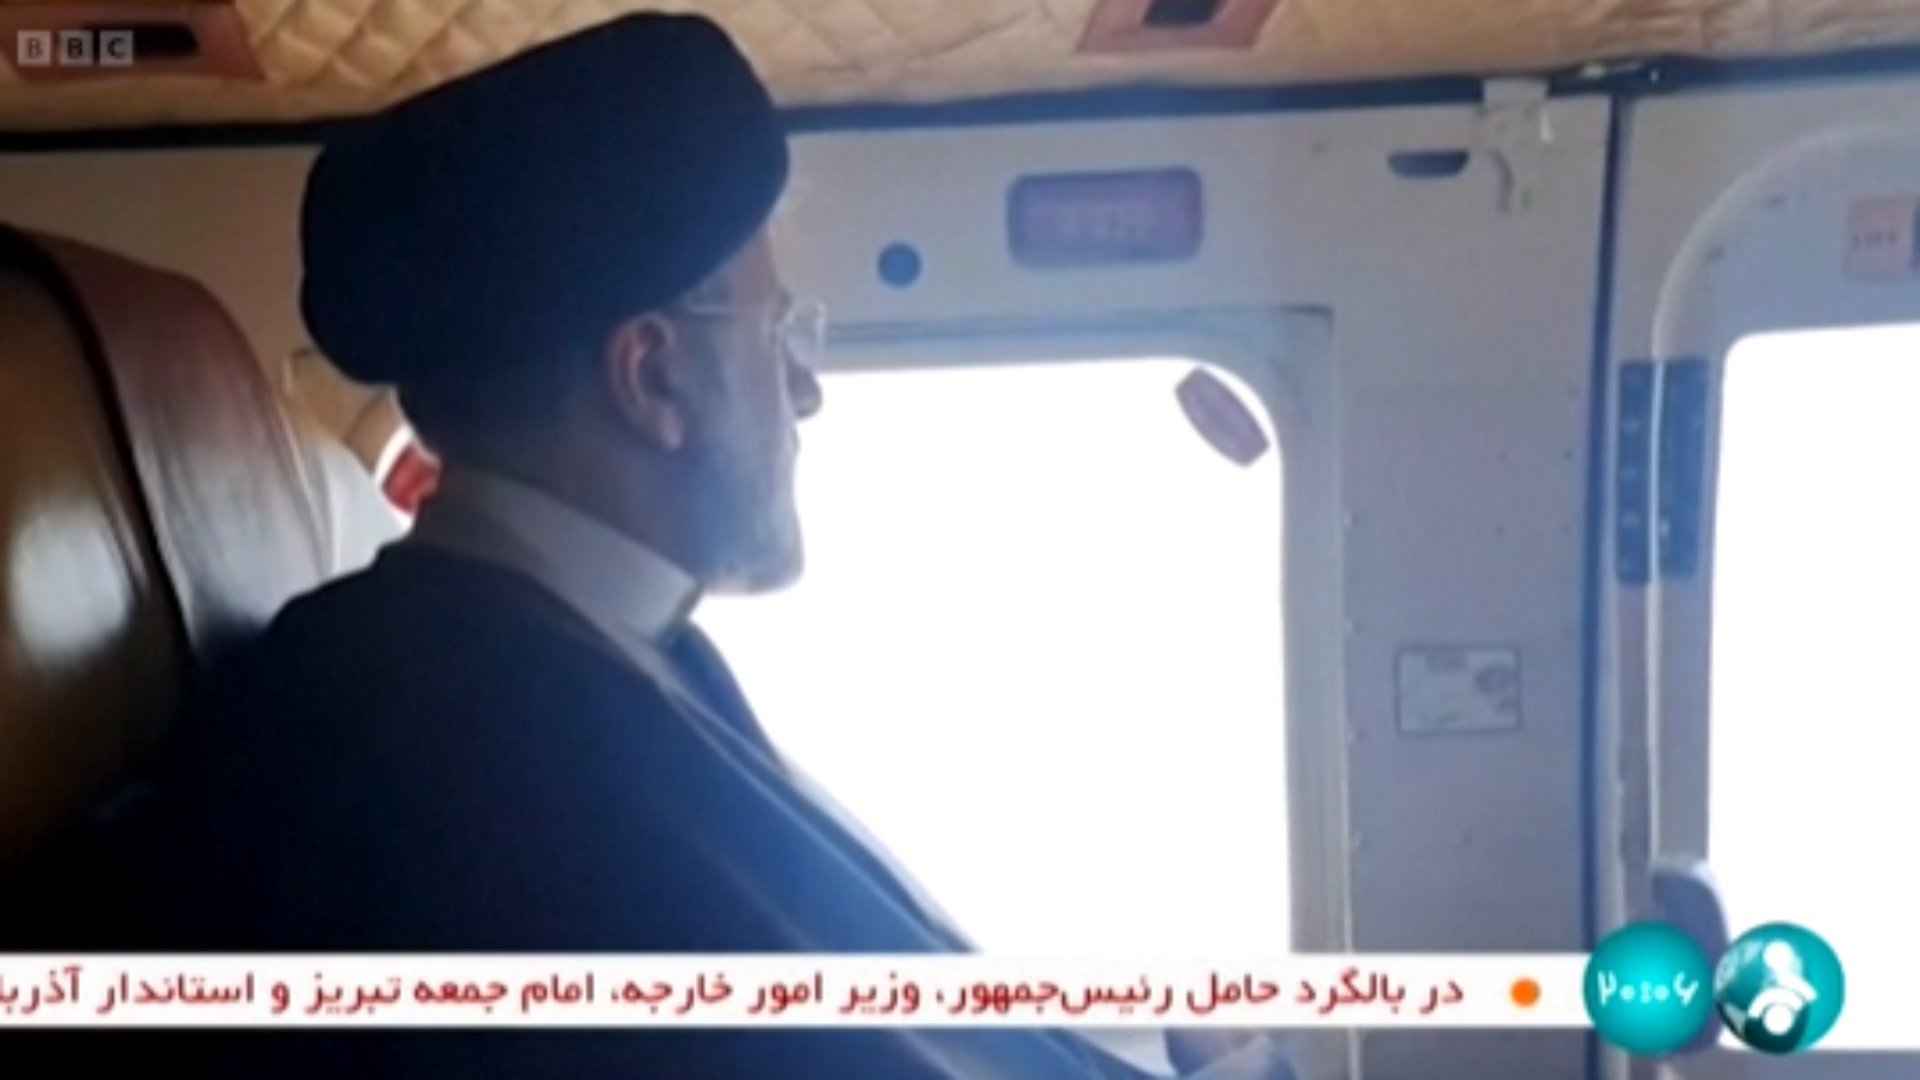 Helikopteri me të cilin po udhëtonte u zhduk, publikohen pamjet e presidentit iranian përpara incidentit